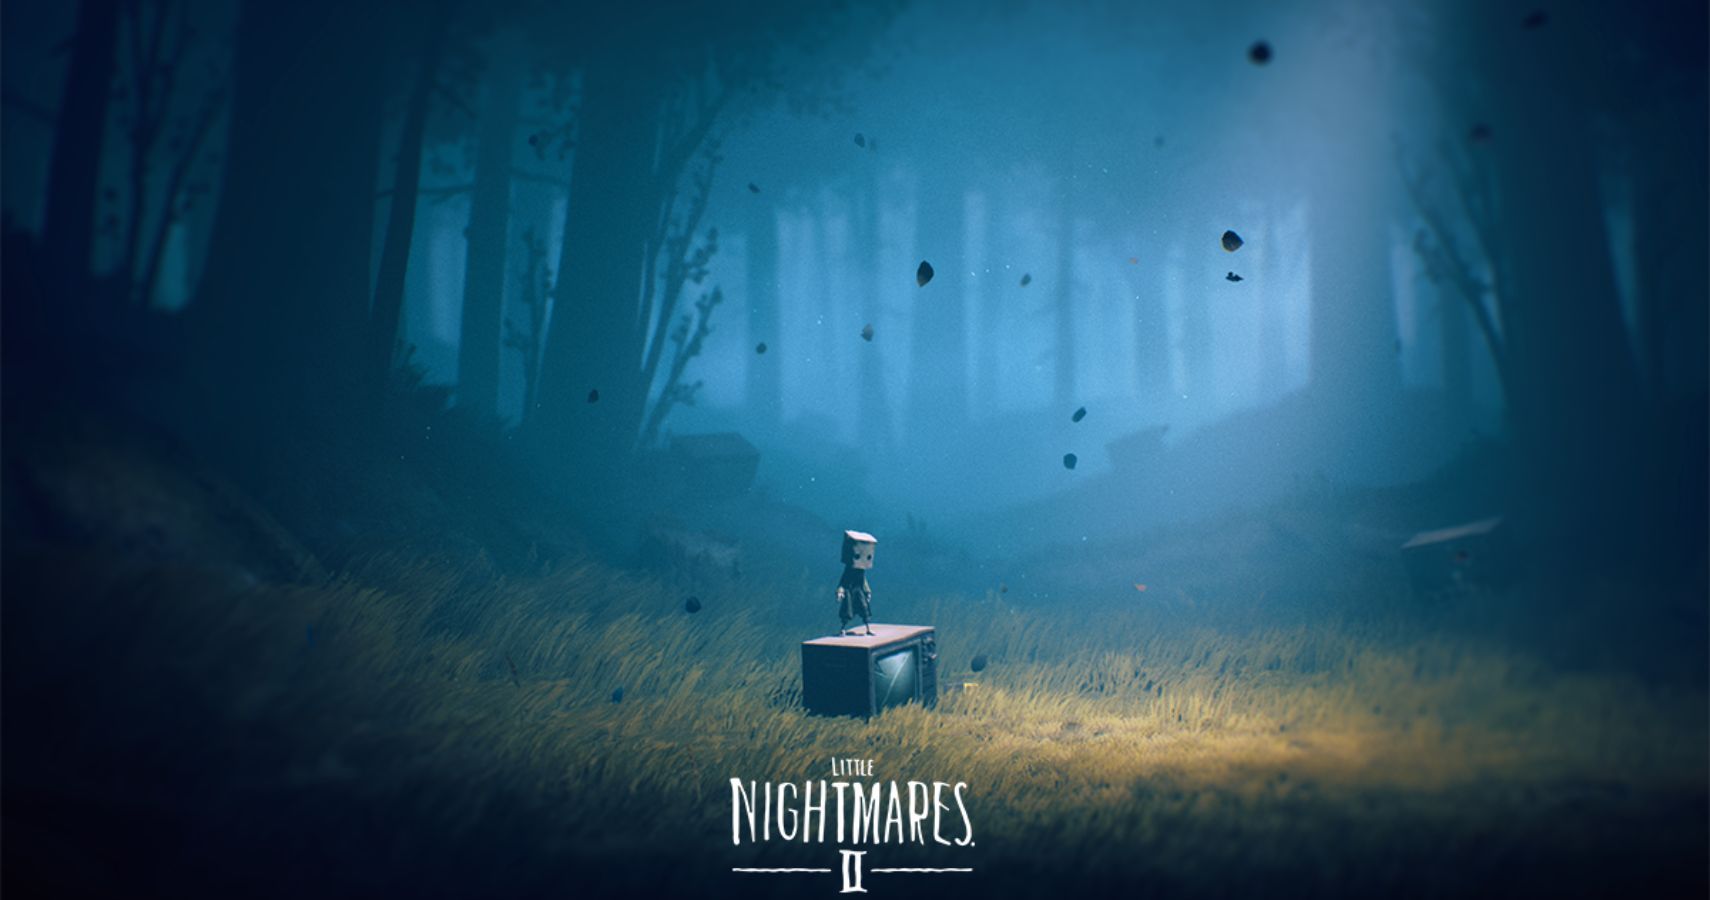 The art of Little Nightmares II by Tarsier studios